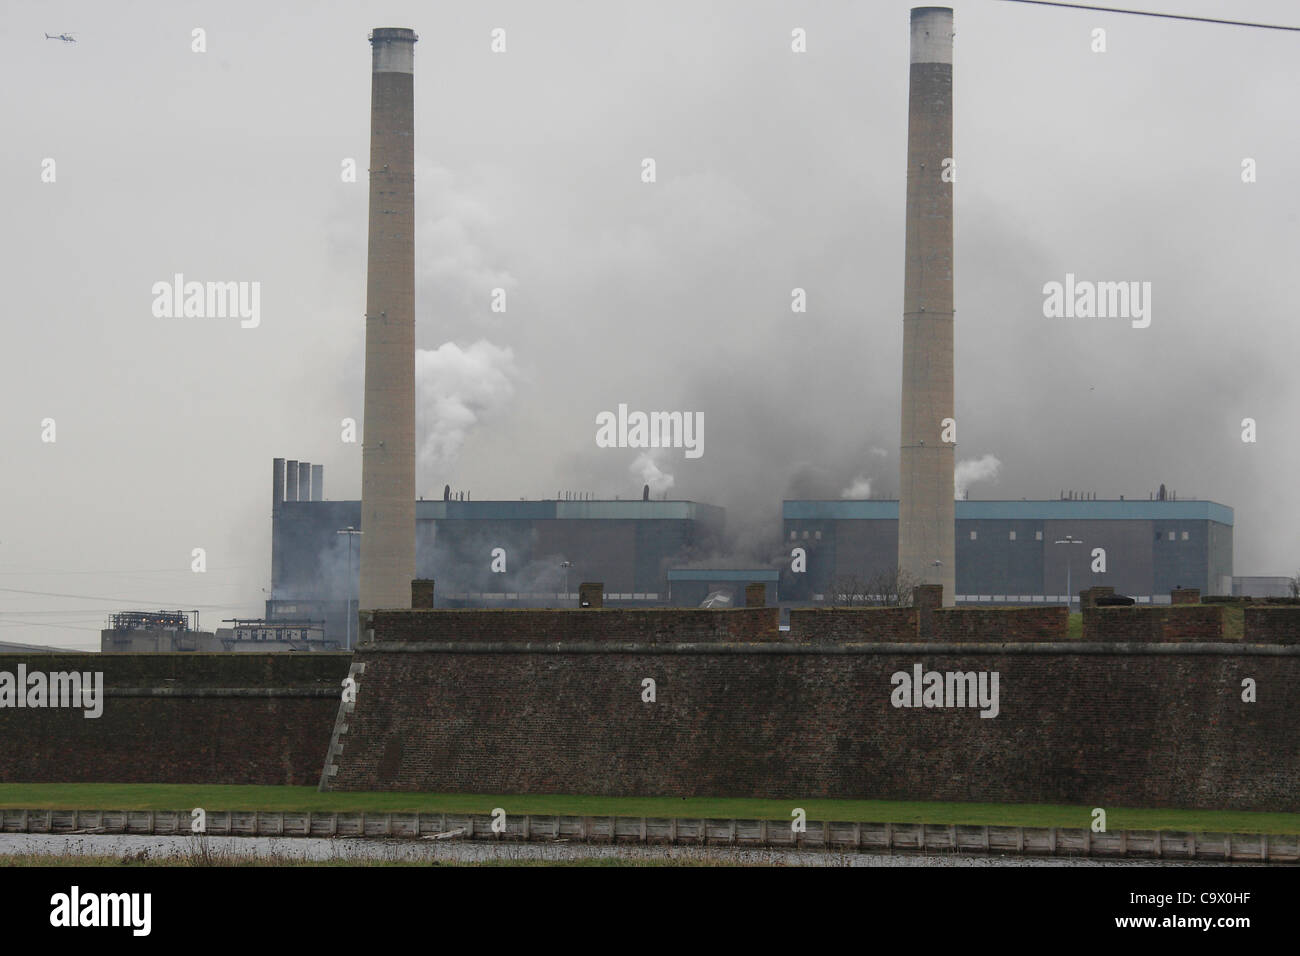 Tilbury, UK. 27. Februar 2012. Schwarzer Rauch und Dampf strömt aus einem Kraftwerk in Tilbury, Essex, nach ein schweren Brand ausbrach. Mehr als 100 Feuerwehrleute sind das Feuer bekämpfen. Es wird berichtet, dass das Feuer in einem Holzpellet-Trichter mit etwa 2.000 Tonnen Treibstoff begonnen. Stockfoto